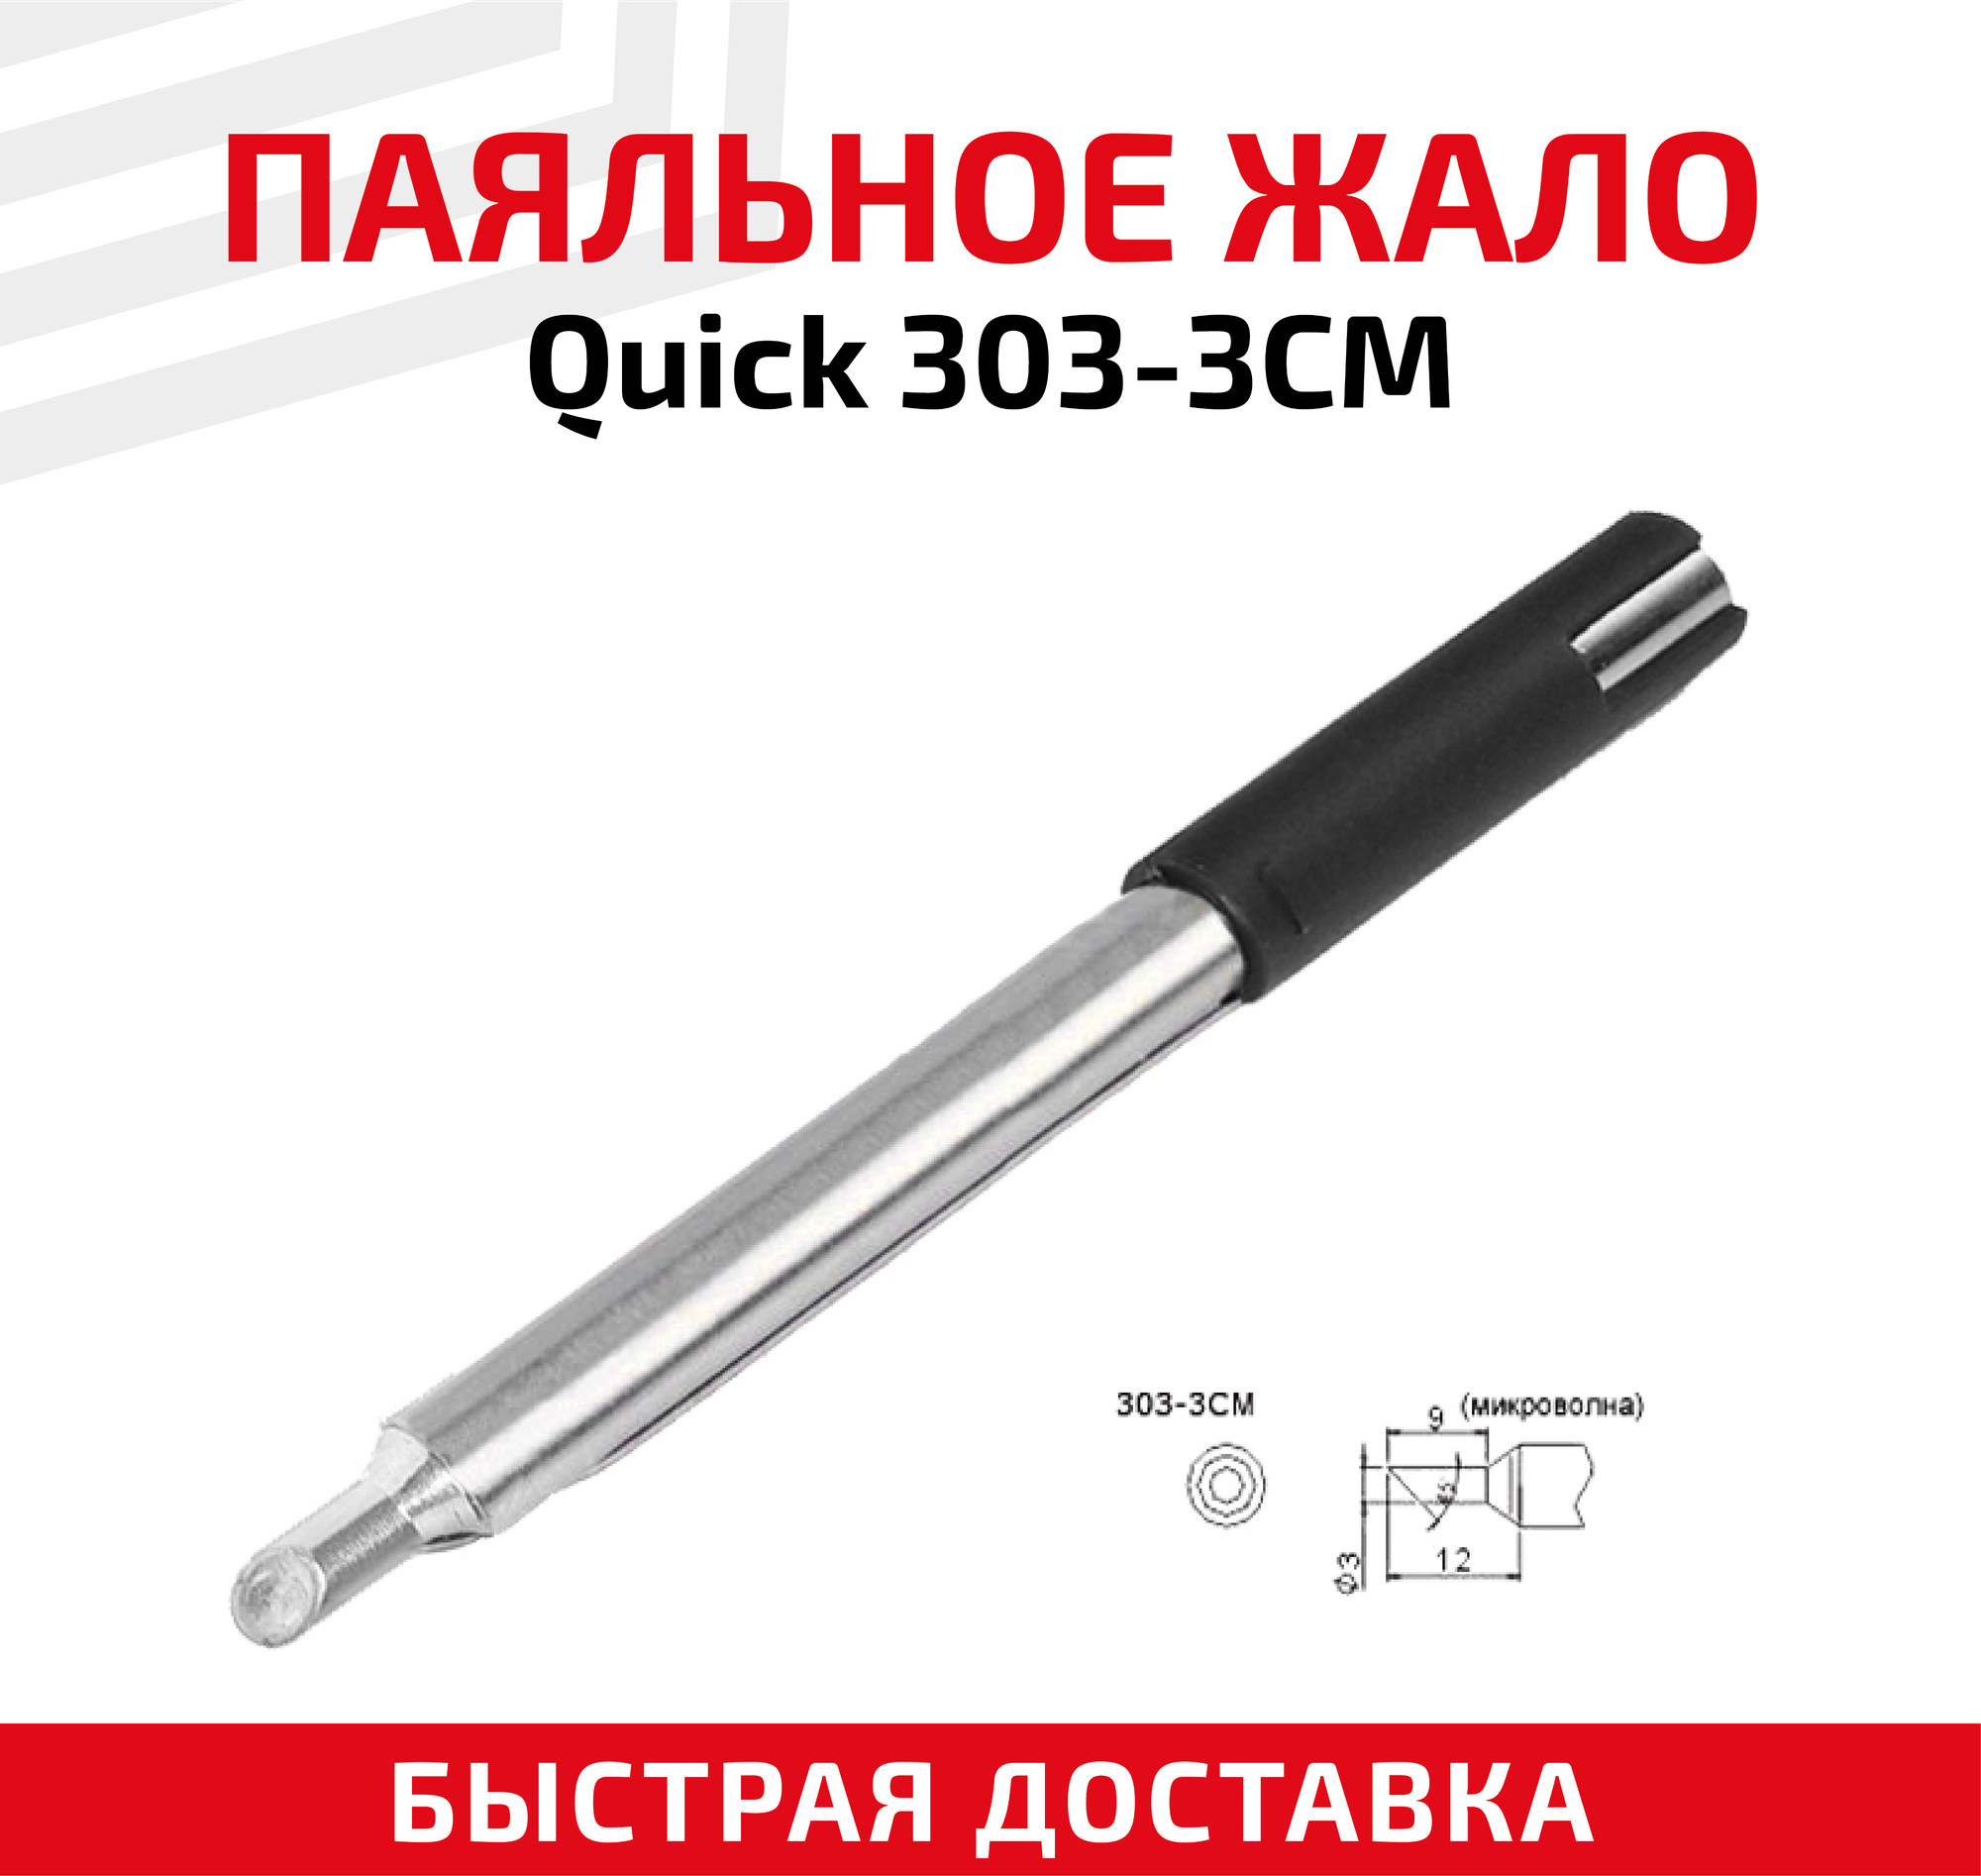 Жало (насадка, наконечник) для паяльника (паяльной станции) Quick 303-3CM, микроволна, 3 мм